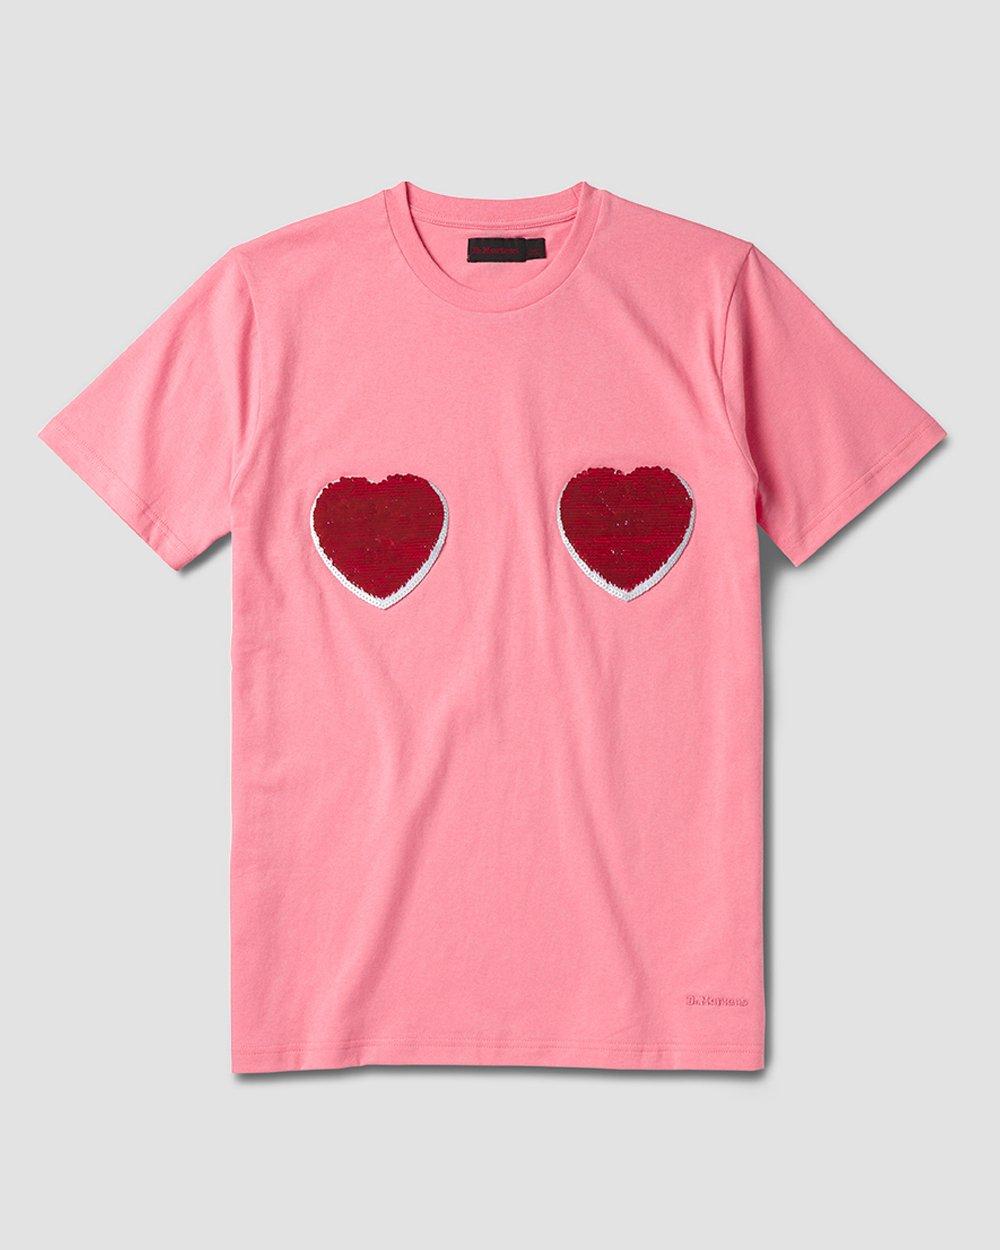 'Love me' T-Shirt Dr. Martens